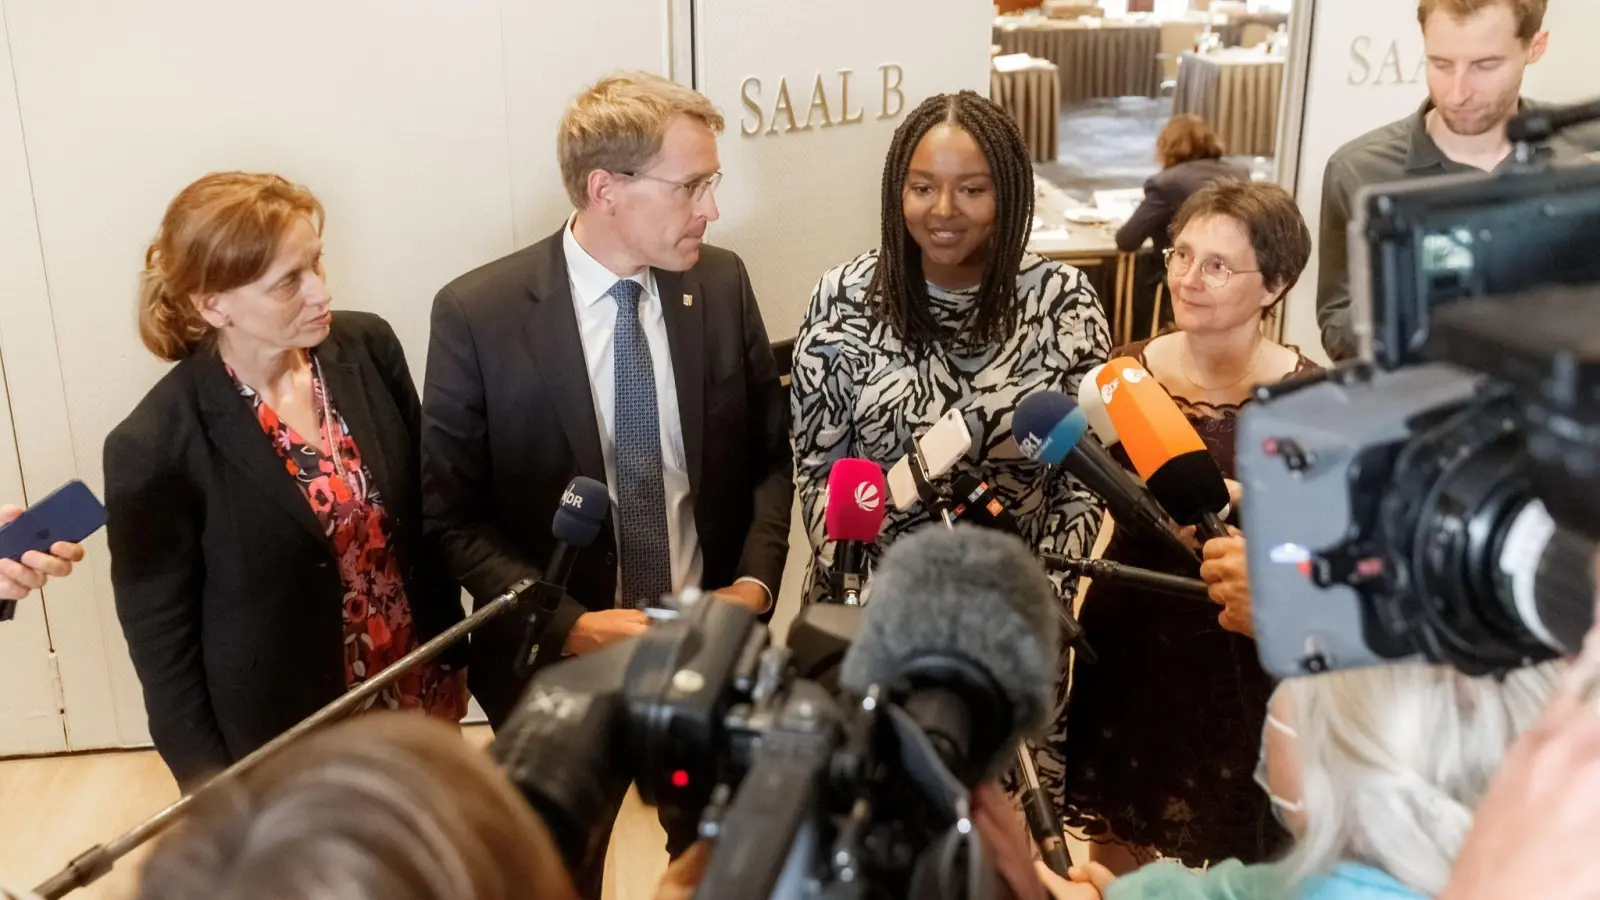 Karin Prien und Daniel Günther von der CDU treten mit Aminata Touré und Monika Heinold vor die Kameras. (Foto: Markus Scholz/dpa)